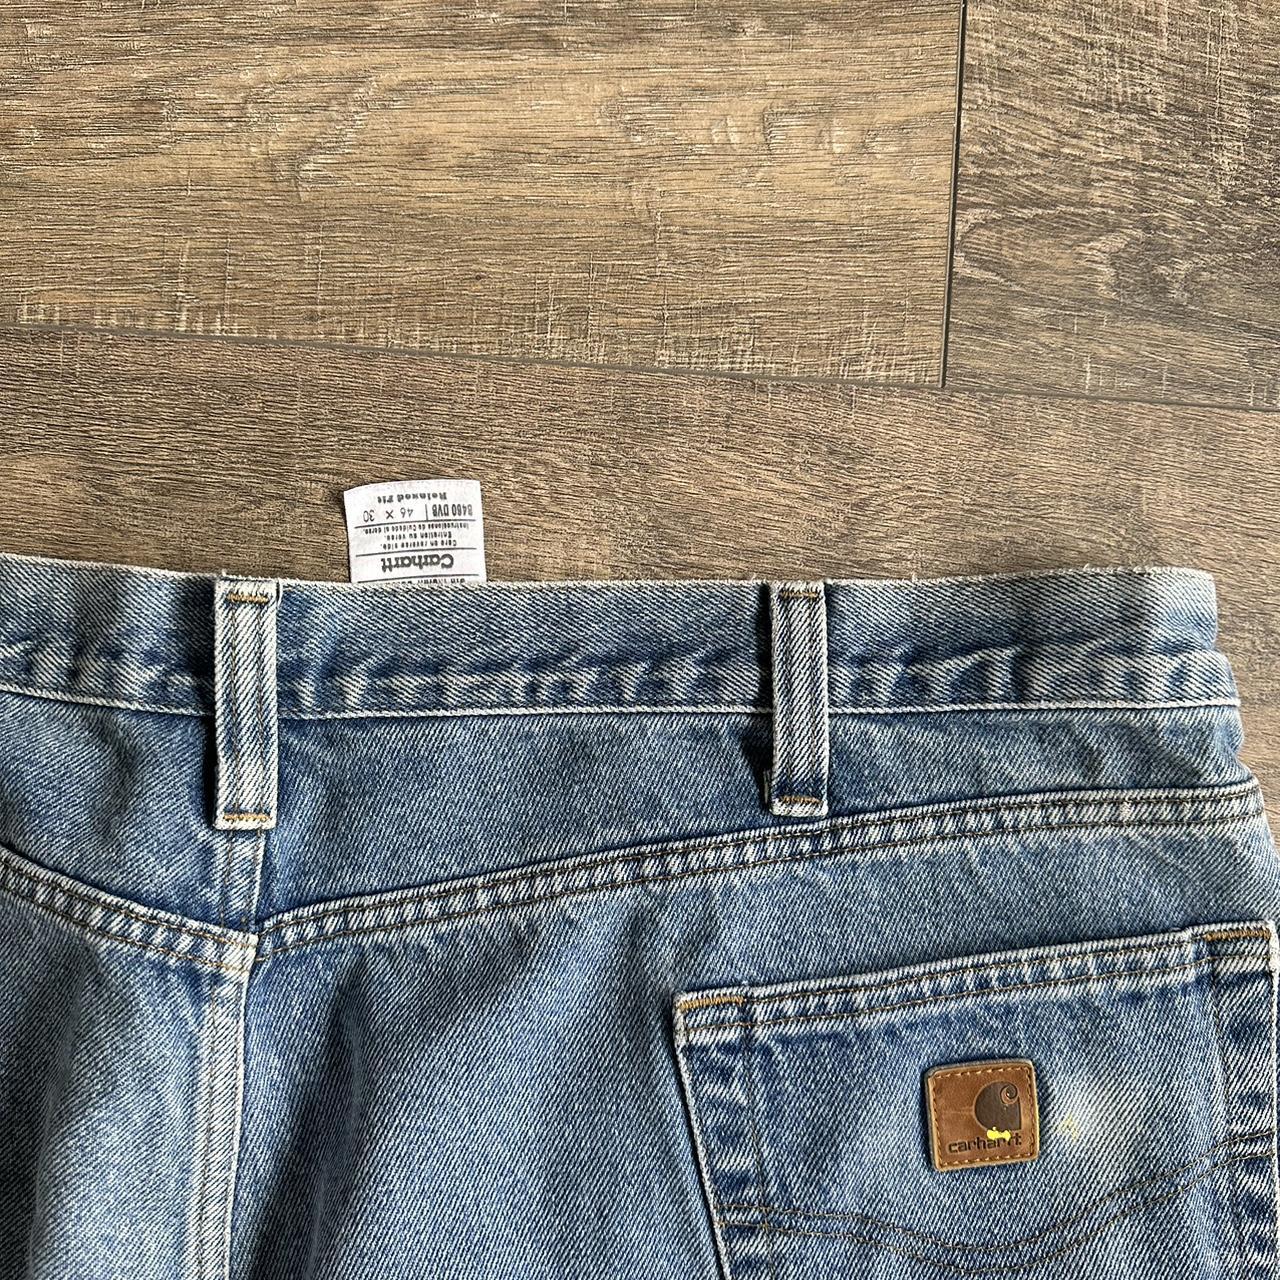 carhartt jeans super big and baggy 46x30 - Depop